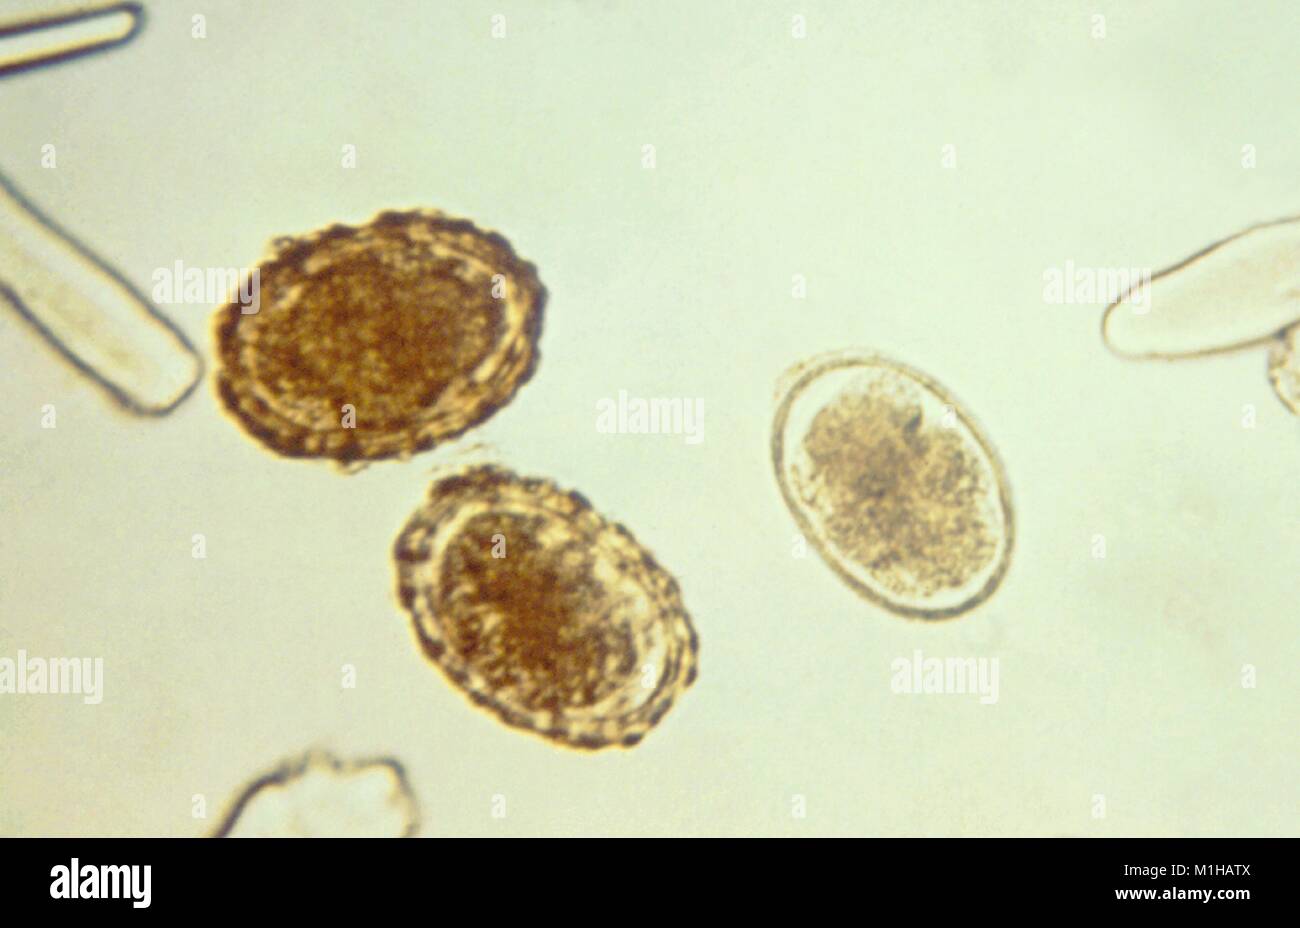 Photomicrograph von drei befruchtete Eier Ascaris Lumbricoides, einer parasitären Rundwürmer Arten, welche die Krankheit Ascariasis, 1979 verursachen. Mit freundlicher CDC. () Stockfoto